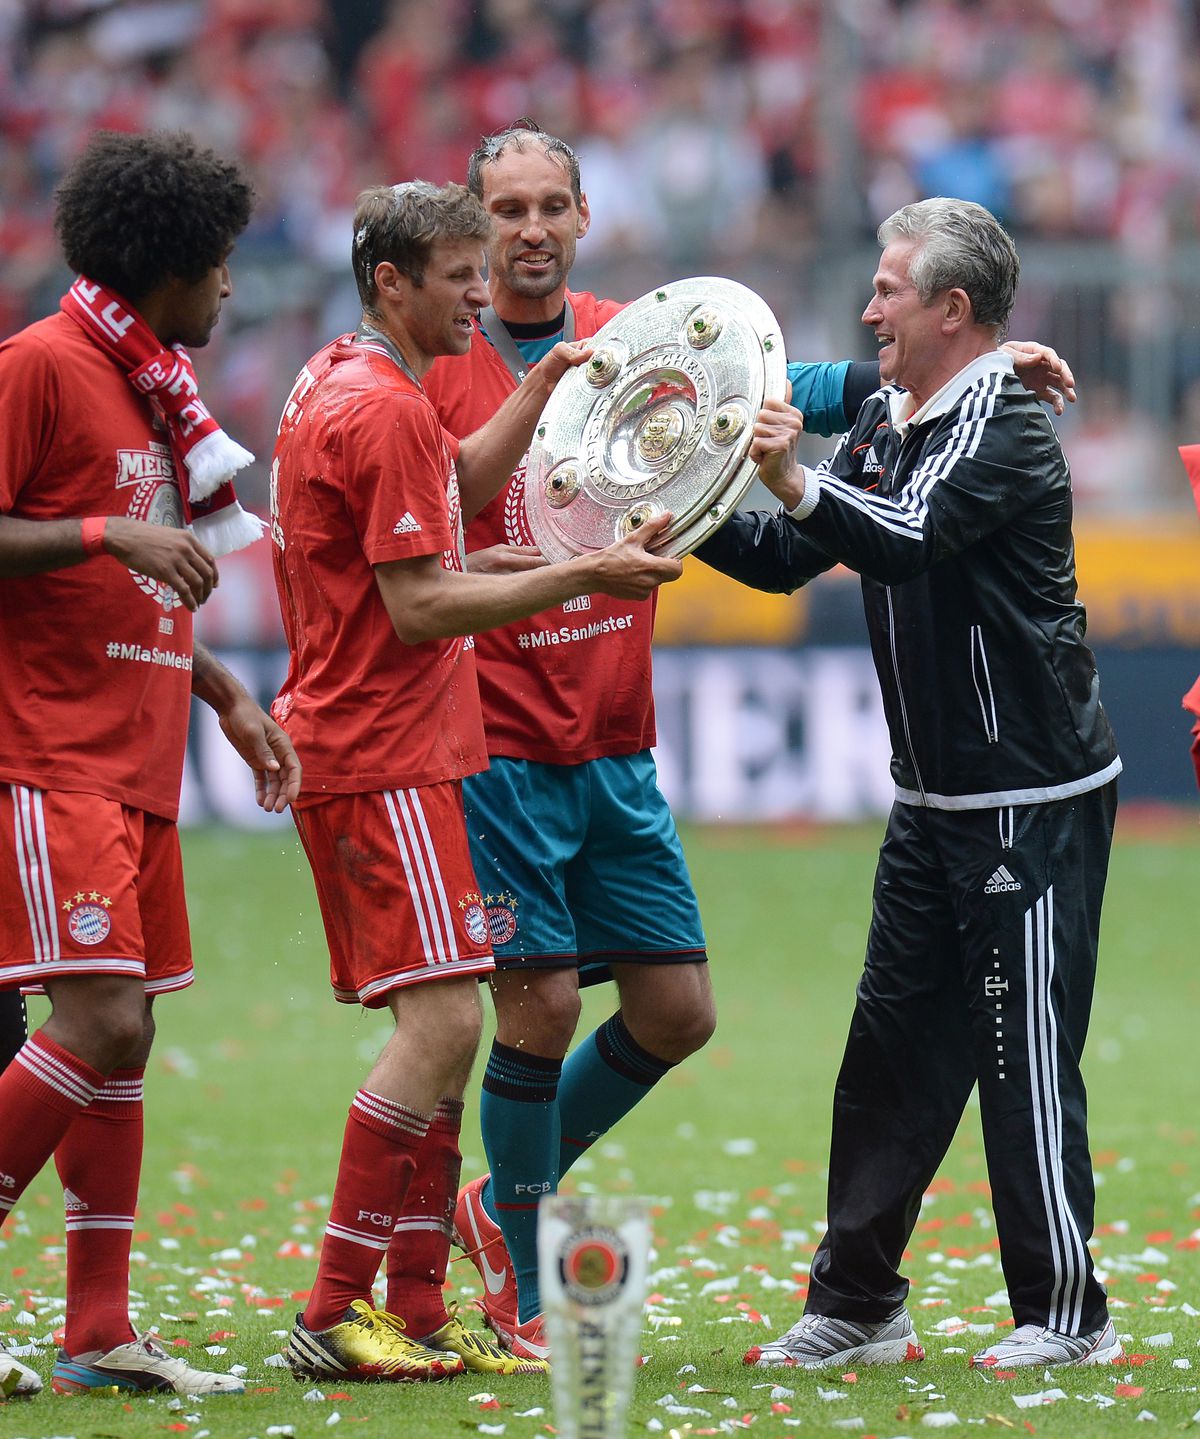 Fussball 1. Bundesliga Saison 2012/2013: Arjen Robben (FC Bayern Muenchen) mit Schale